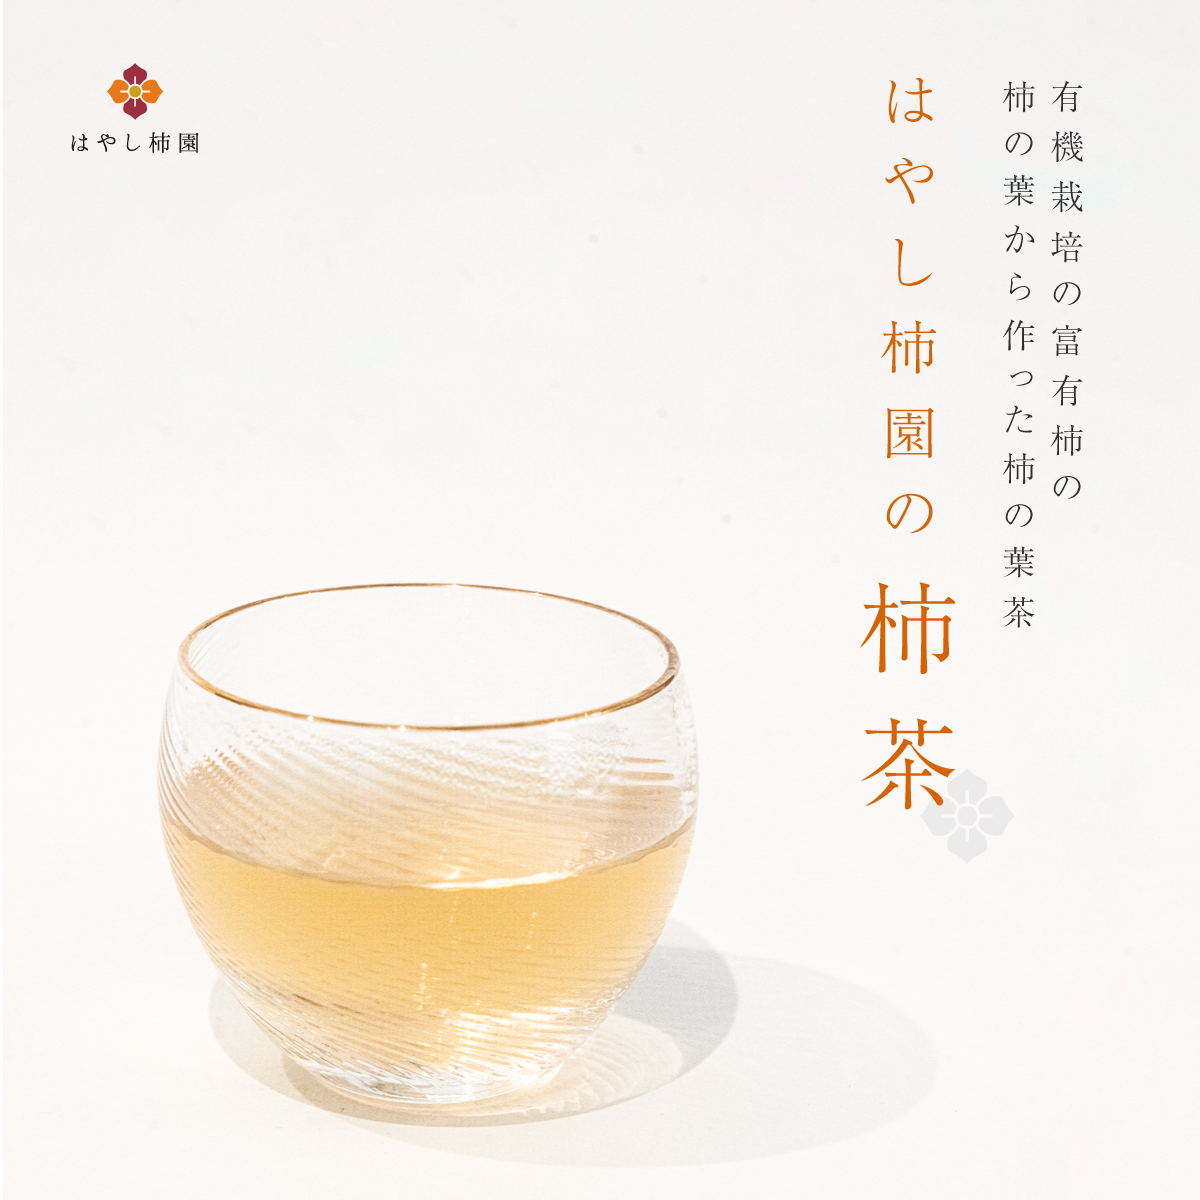 岐阜県産のお茶,柿茶,美味しいお茶